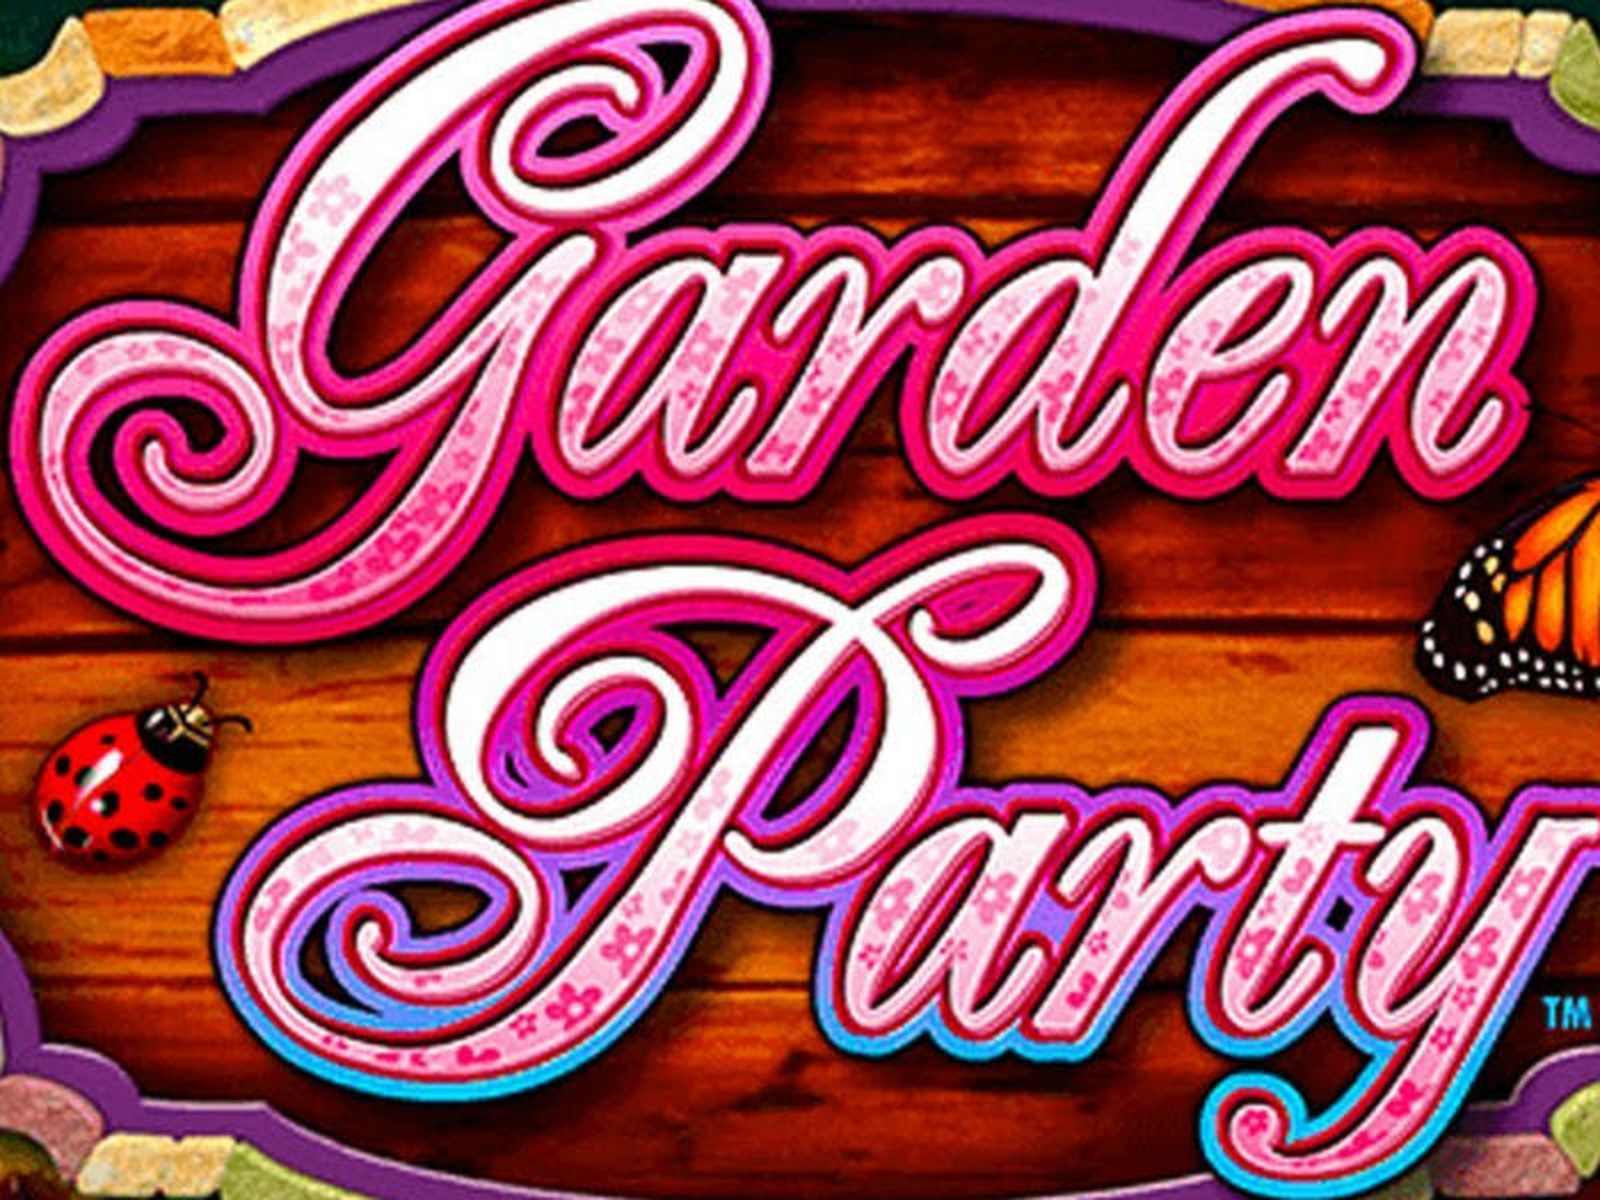 Garden Party demo